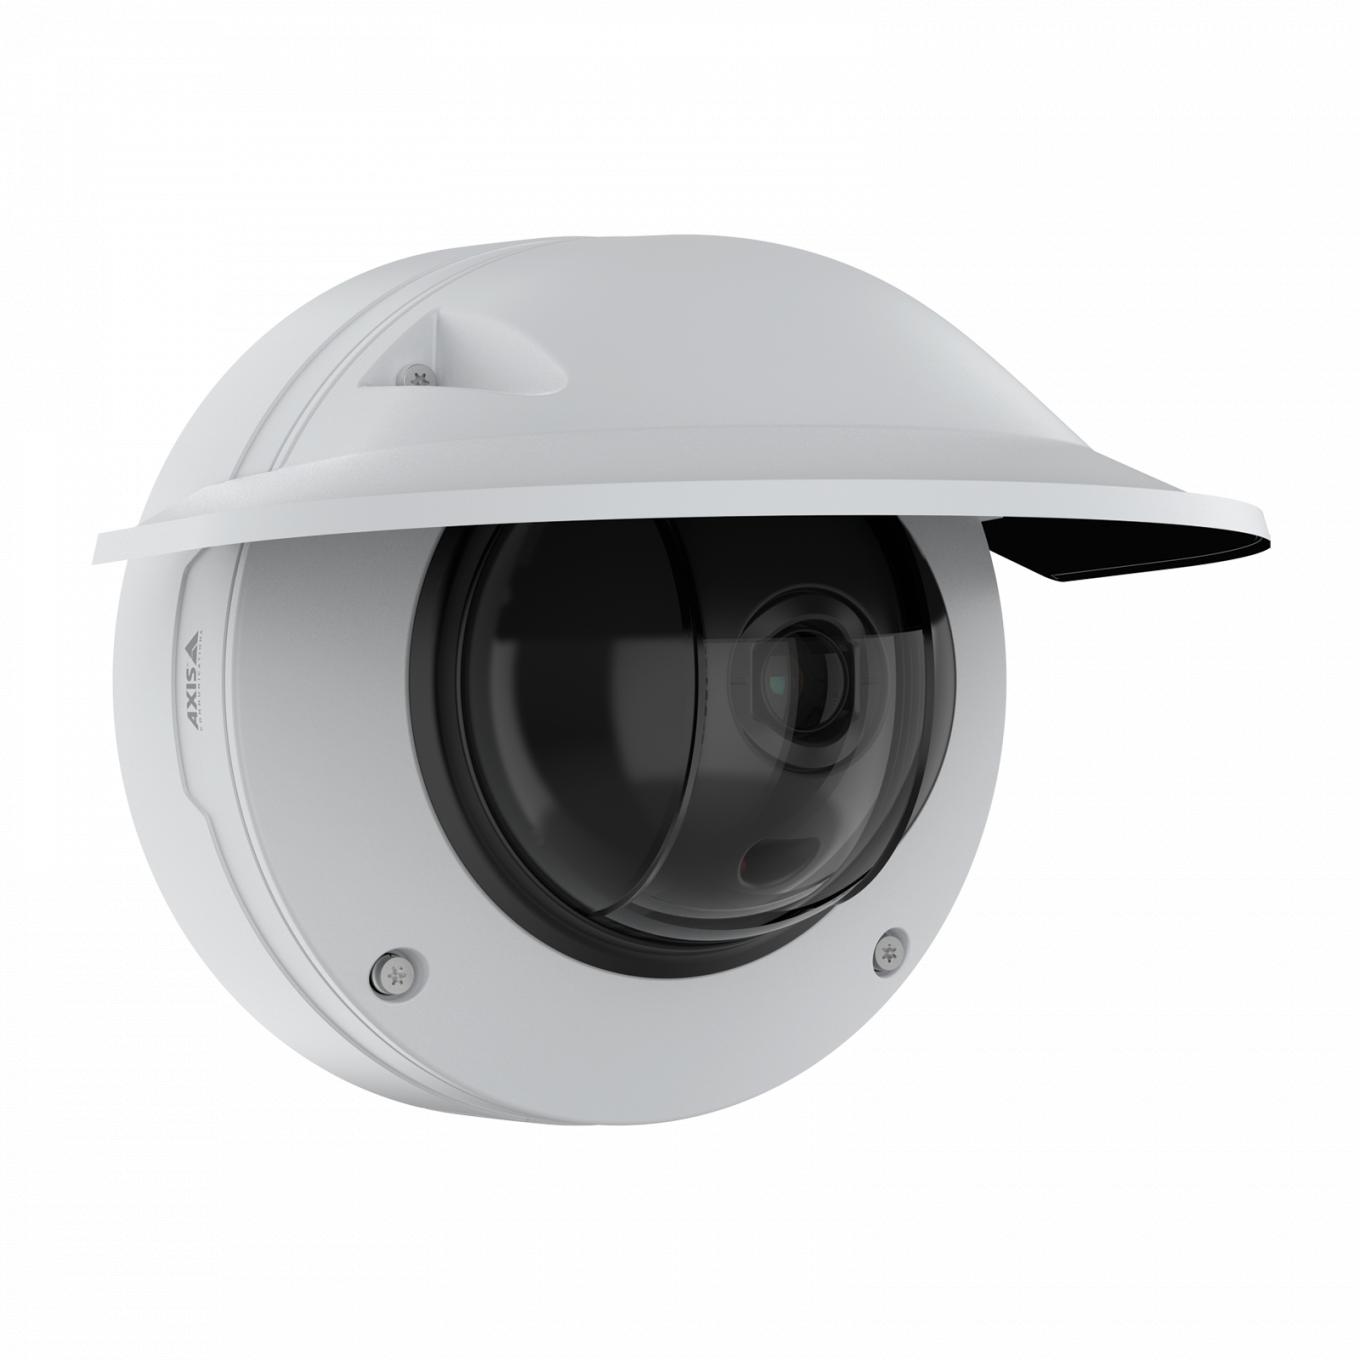 AXIS Q3536-LVE Dome Camera avec protection étanche, vue depuis son angle droit